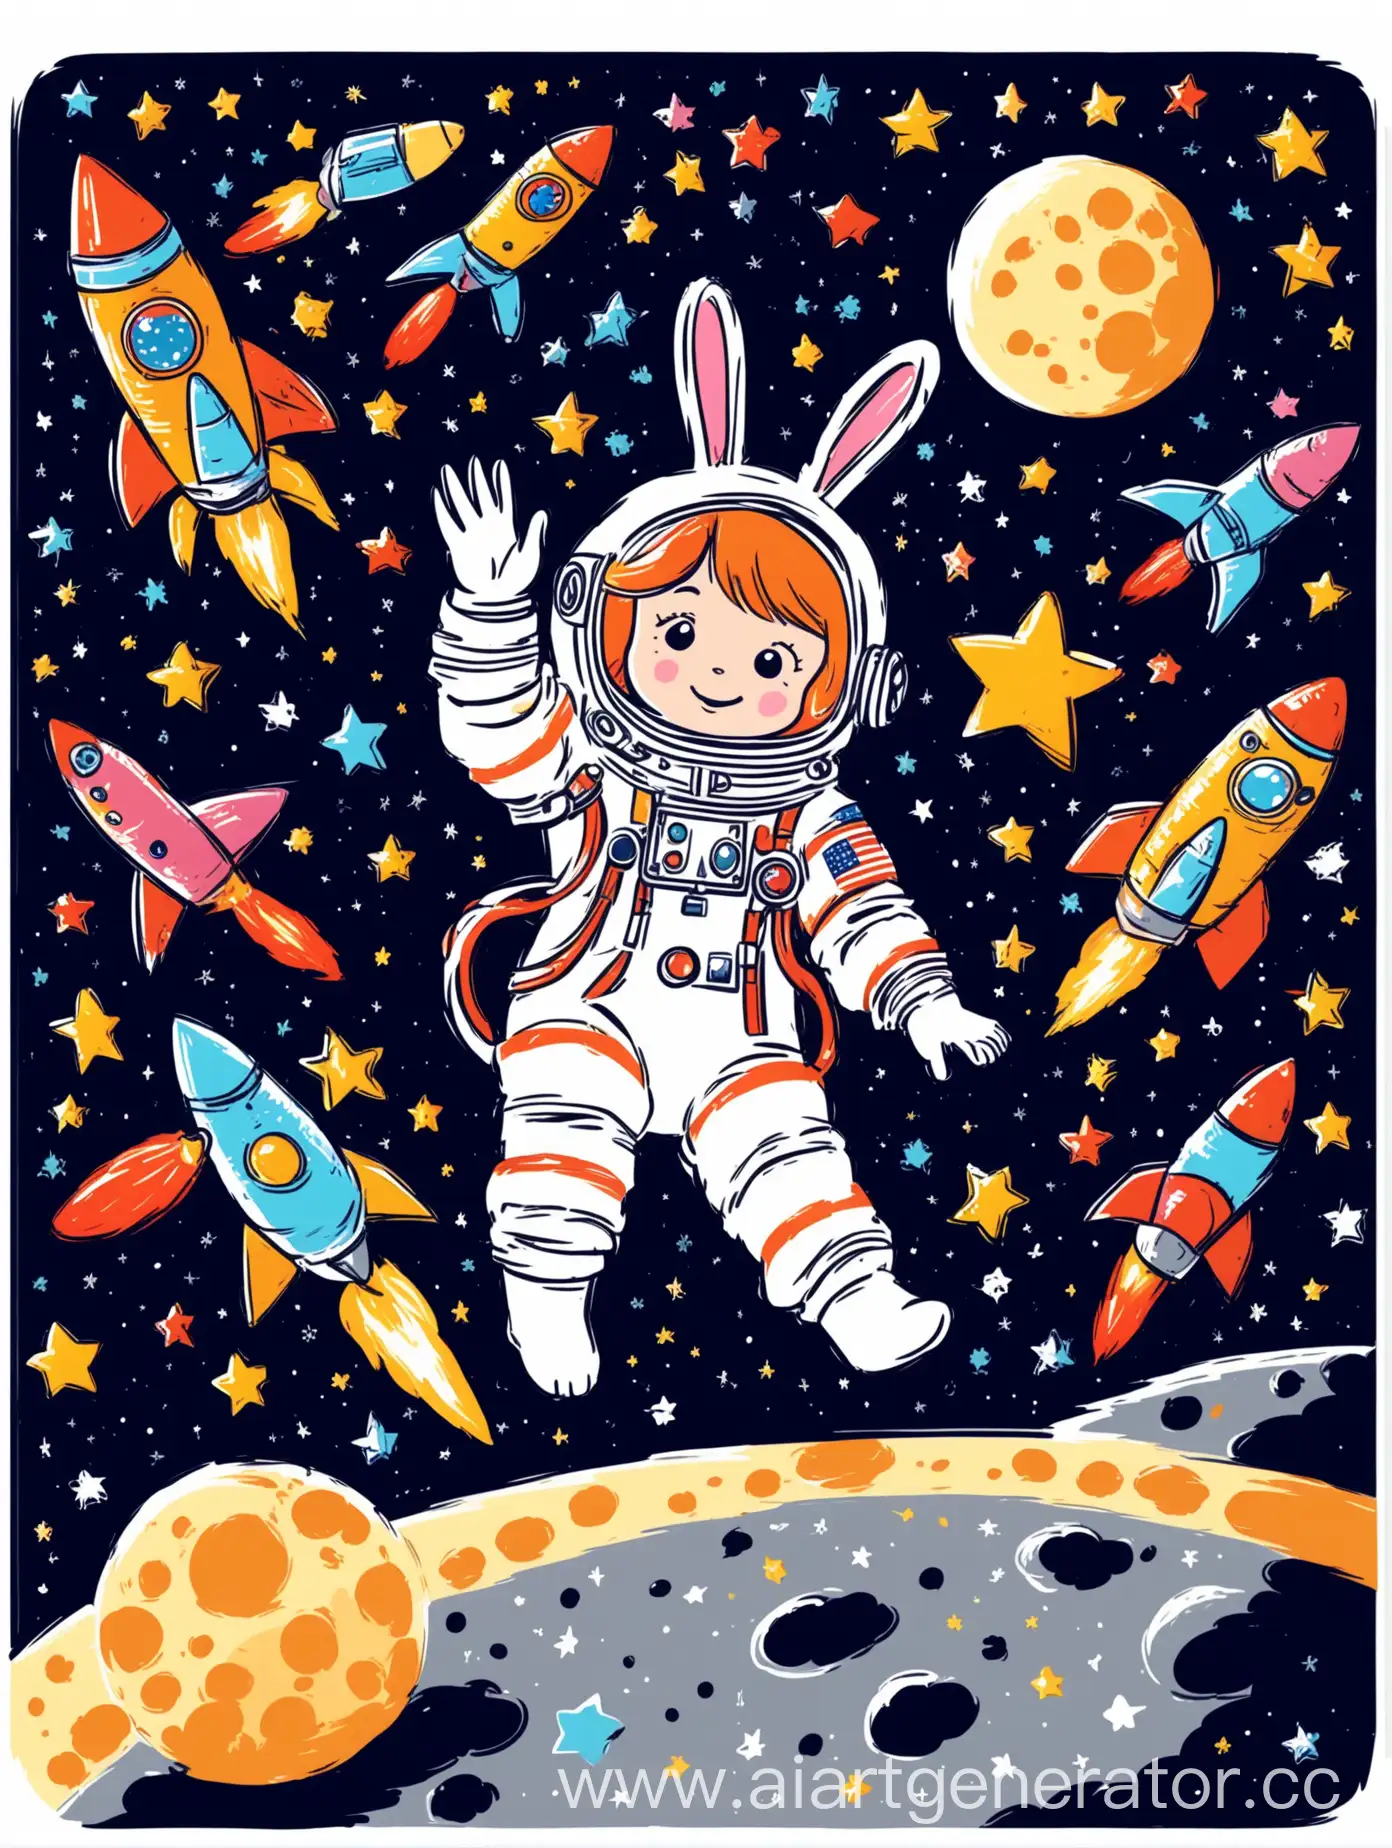 Космонавт-зайчик сидит на месяце и рисует милые звездочки. На фоне детские ракеты. Стиль рисунка Вектор, стиль дисней. Яркое и красочное, детское изображение